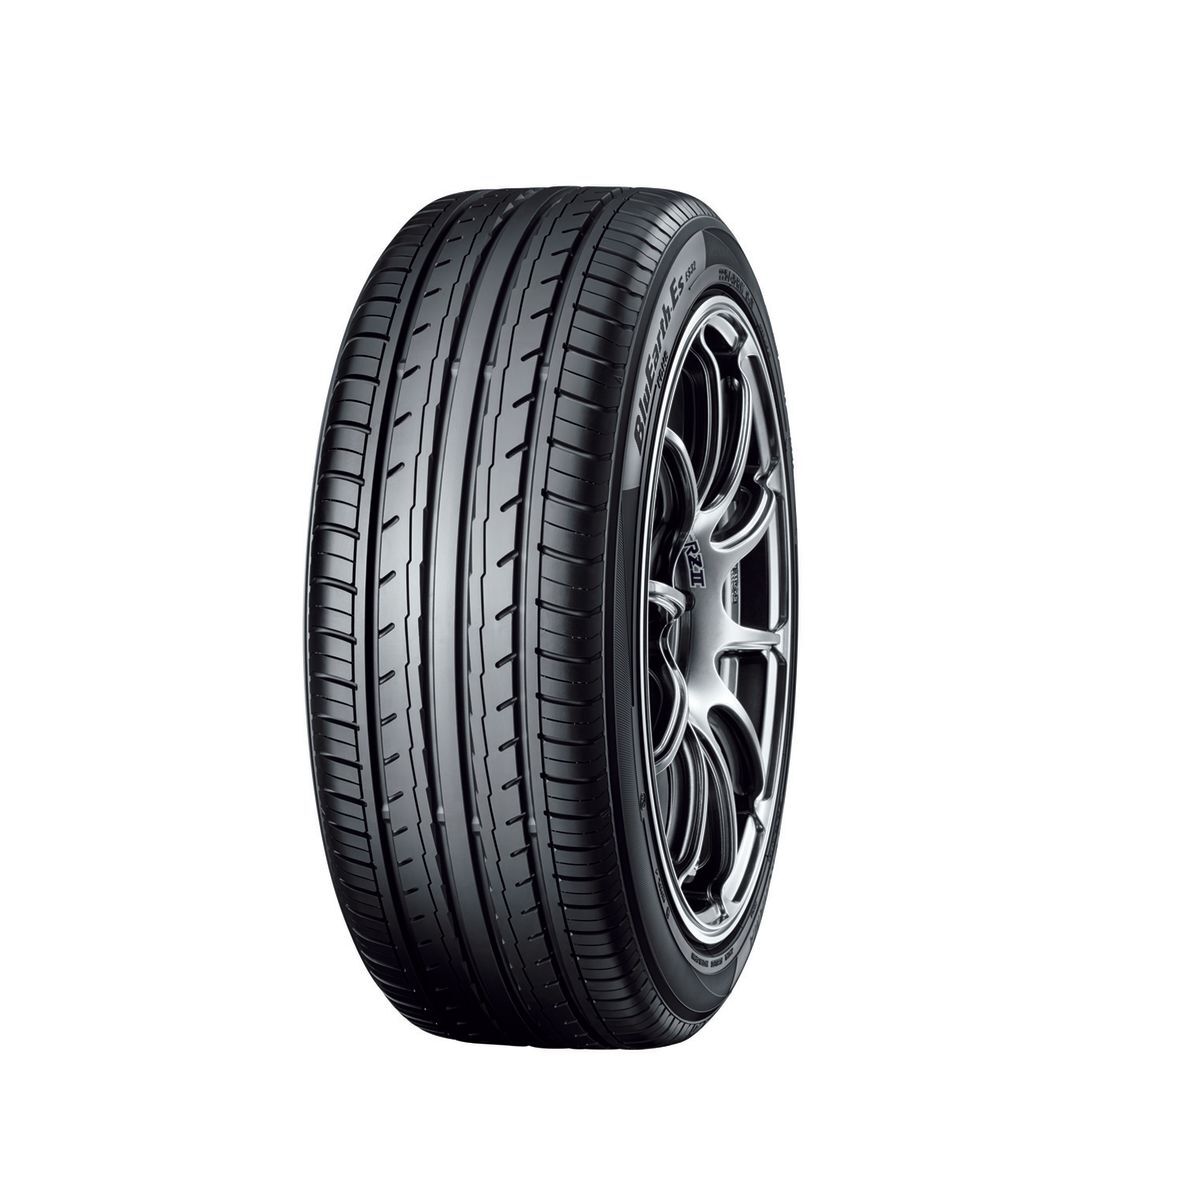 Neumáticos de verano YOKOHAMA BluEarth-ES ES32 225/45R17 XL 94V